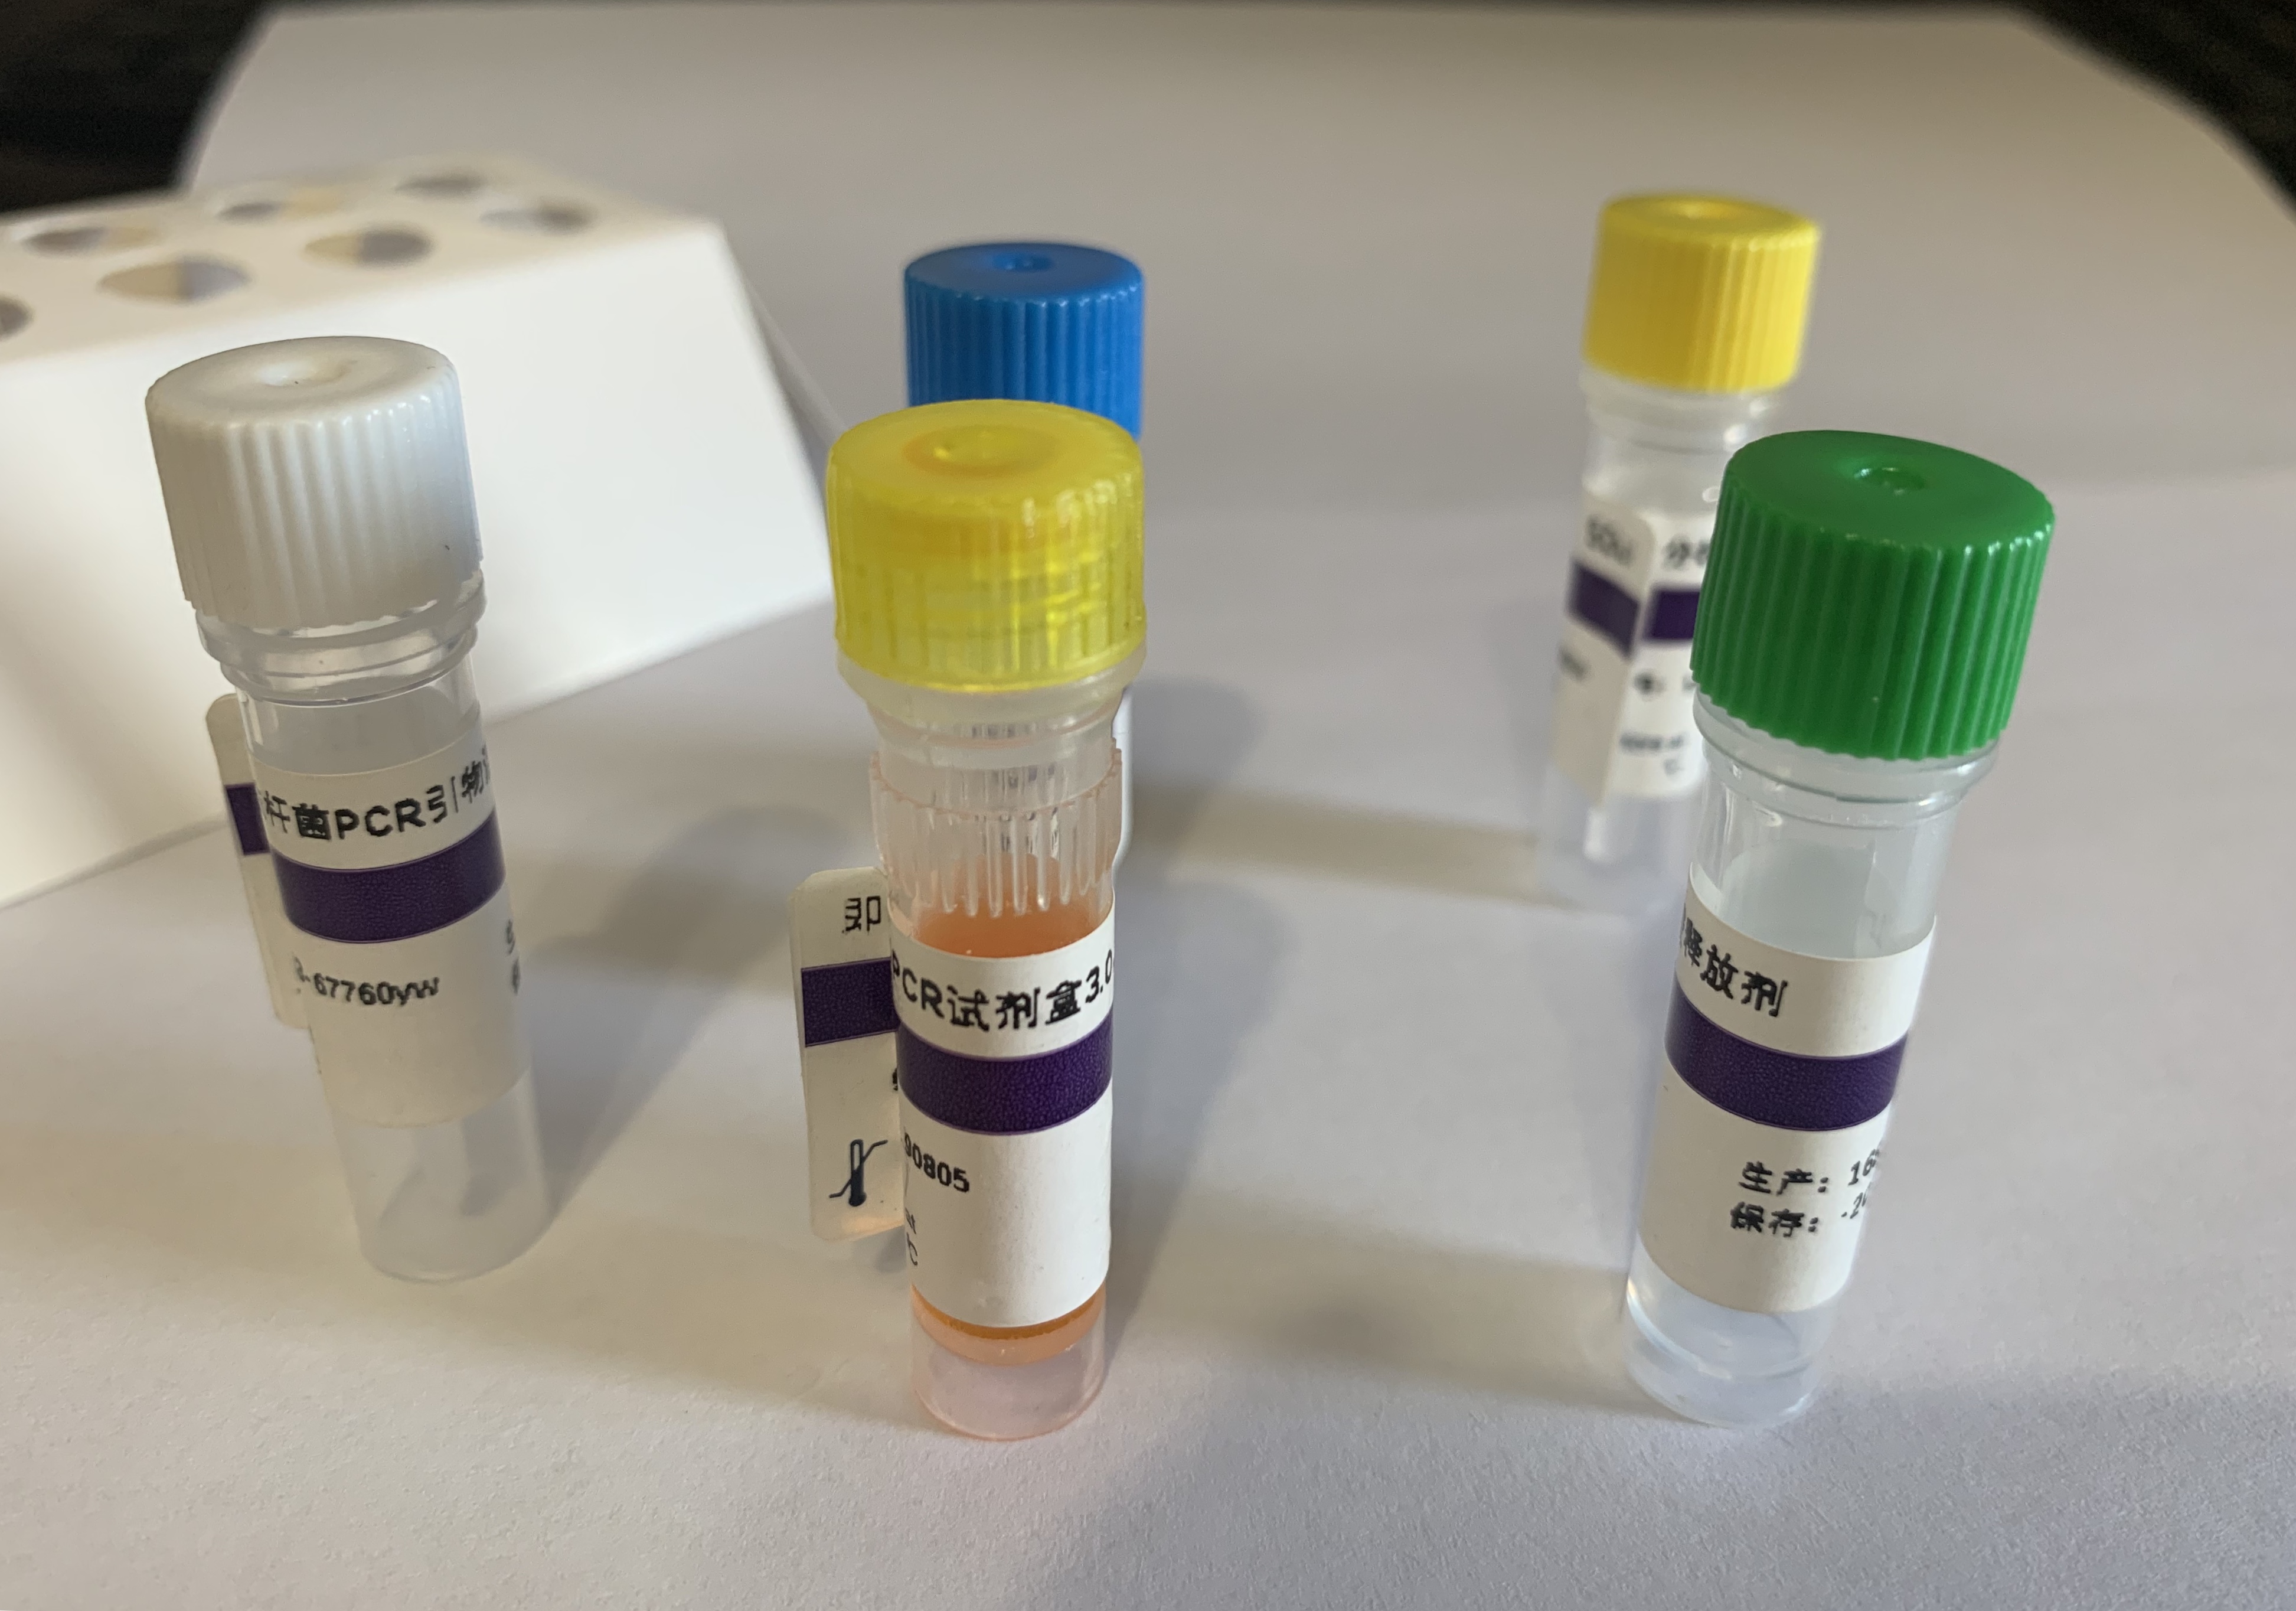 甲型流感（禽流感）病毒H6N1亚型探针法荧光定量RT-PCR试剂盒